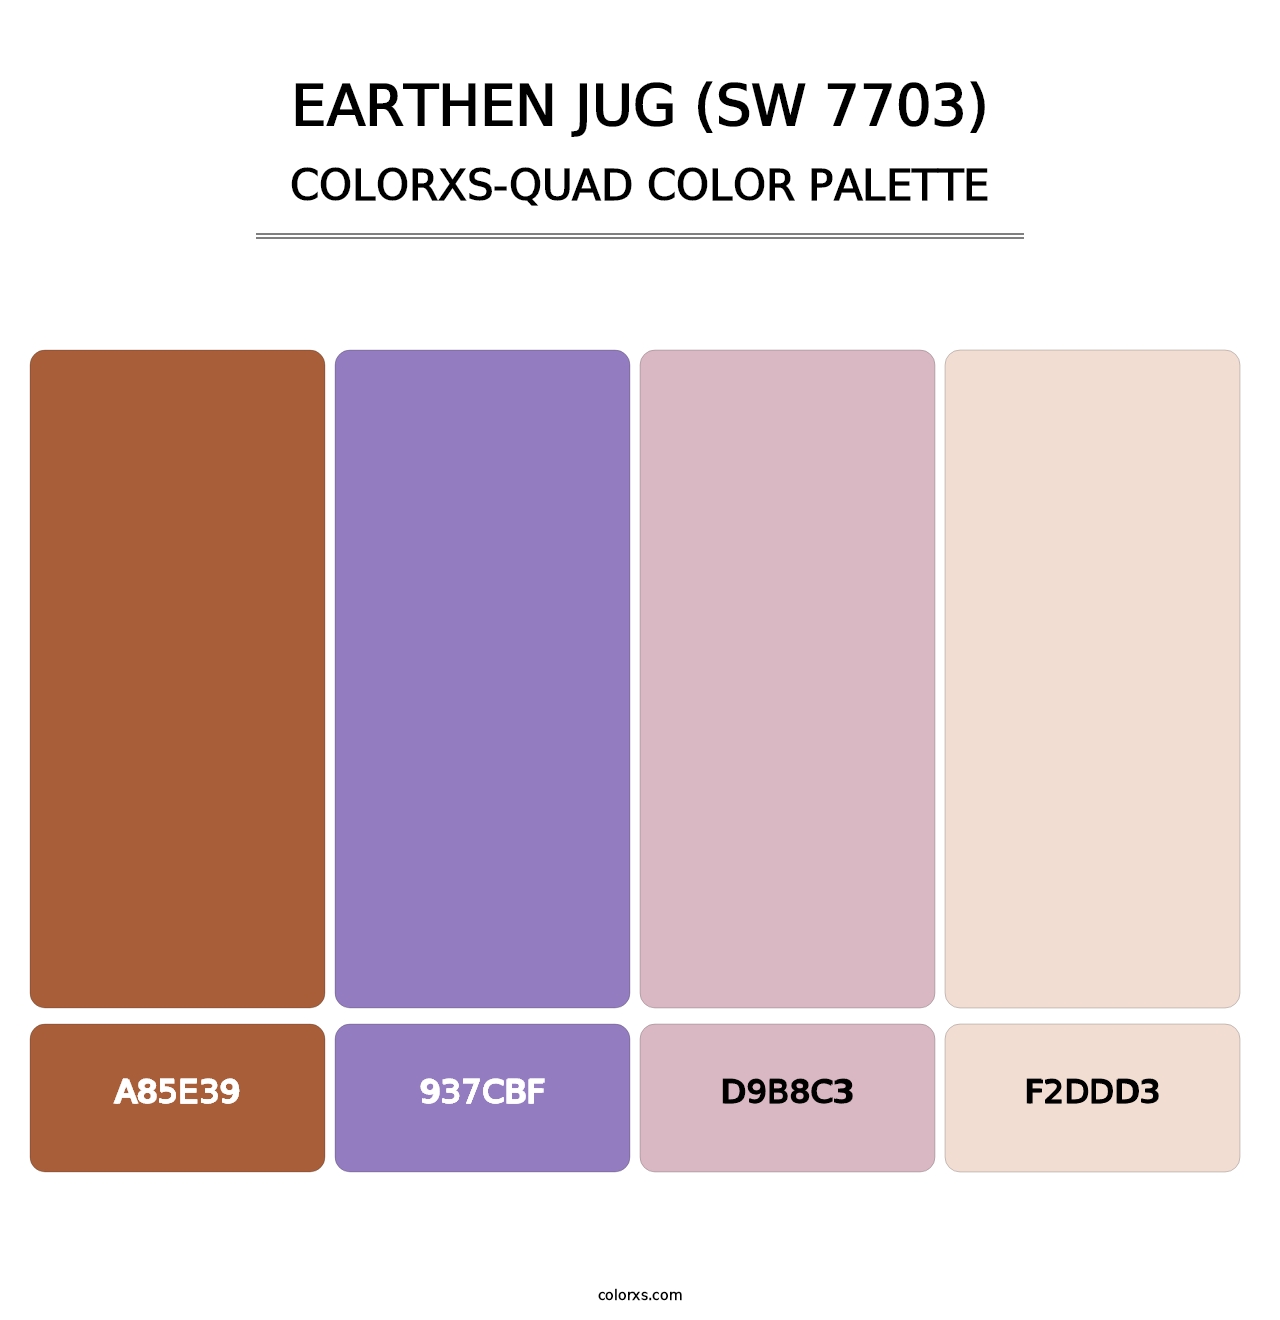 Earthen Jug (SW 7703) - Colorxs Quad Palette